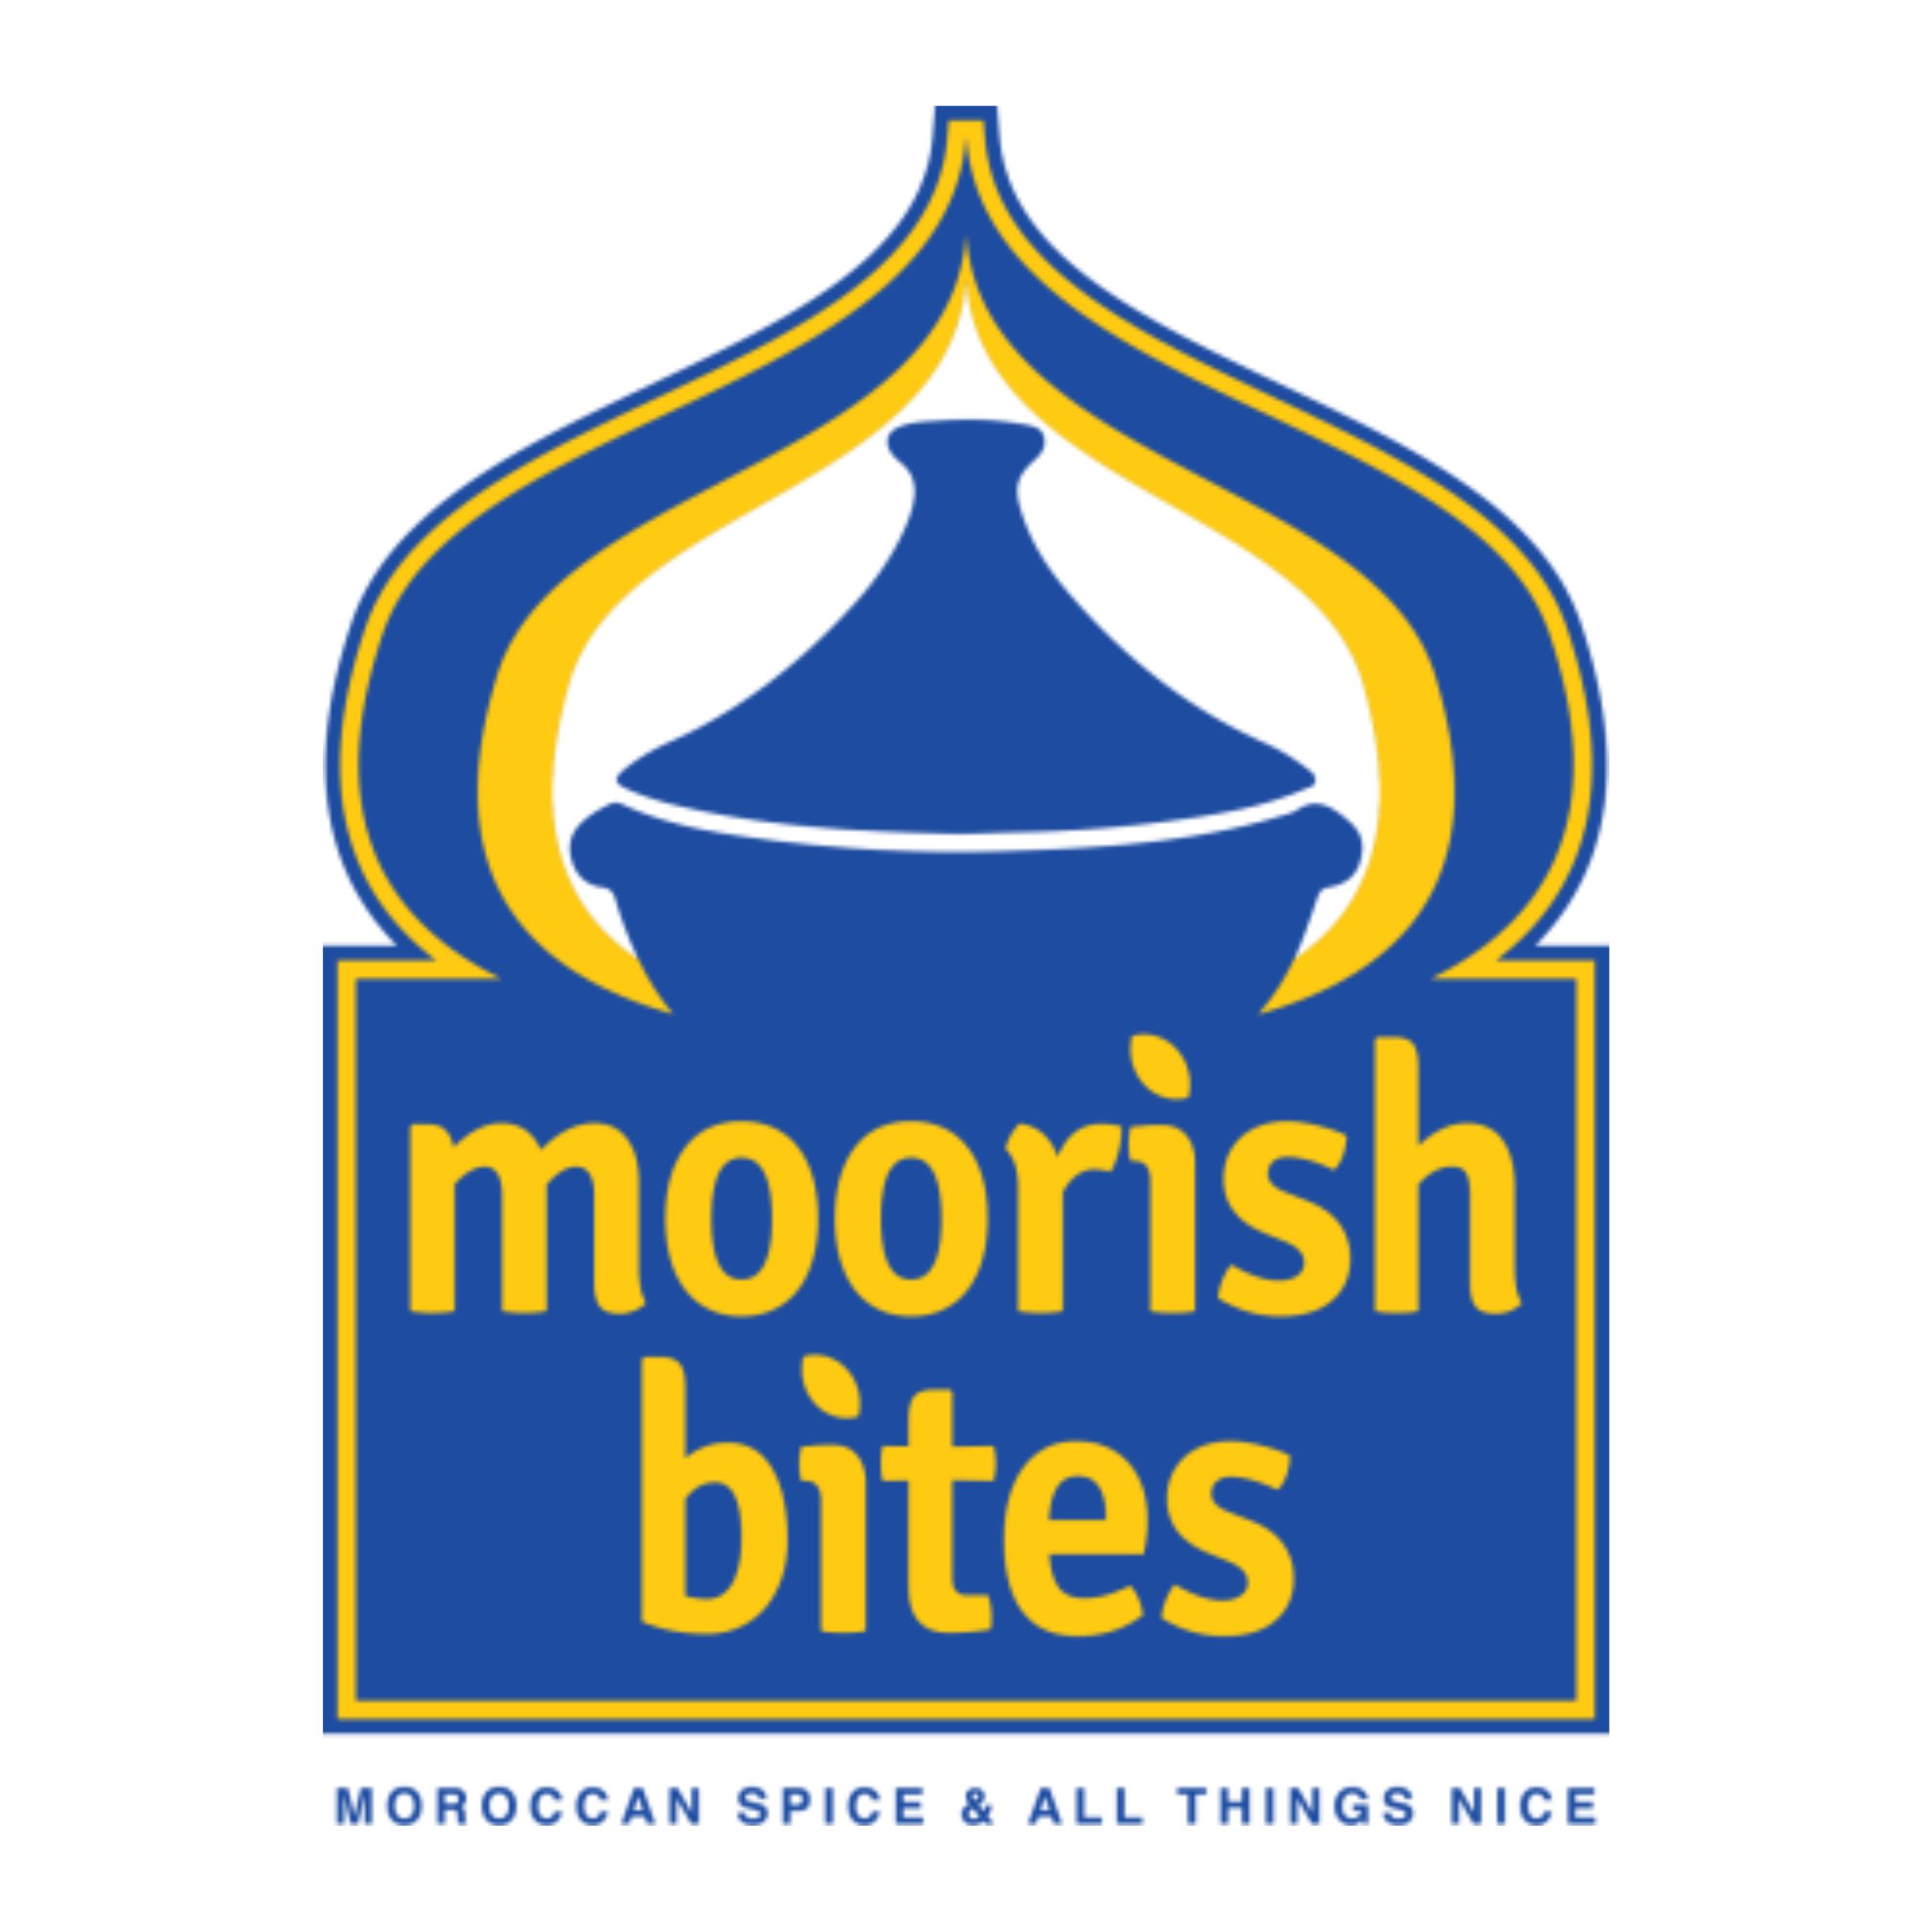 Moorish-Bites